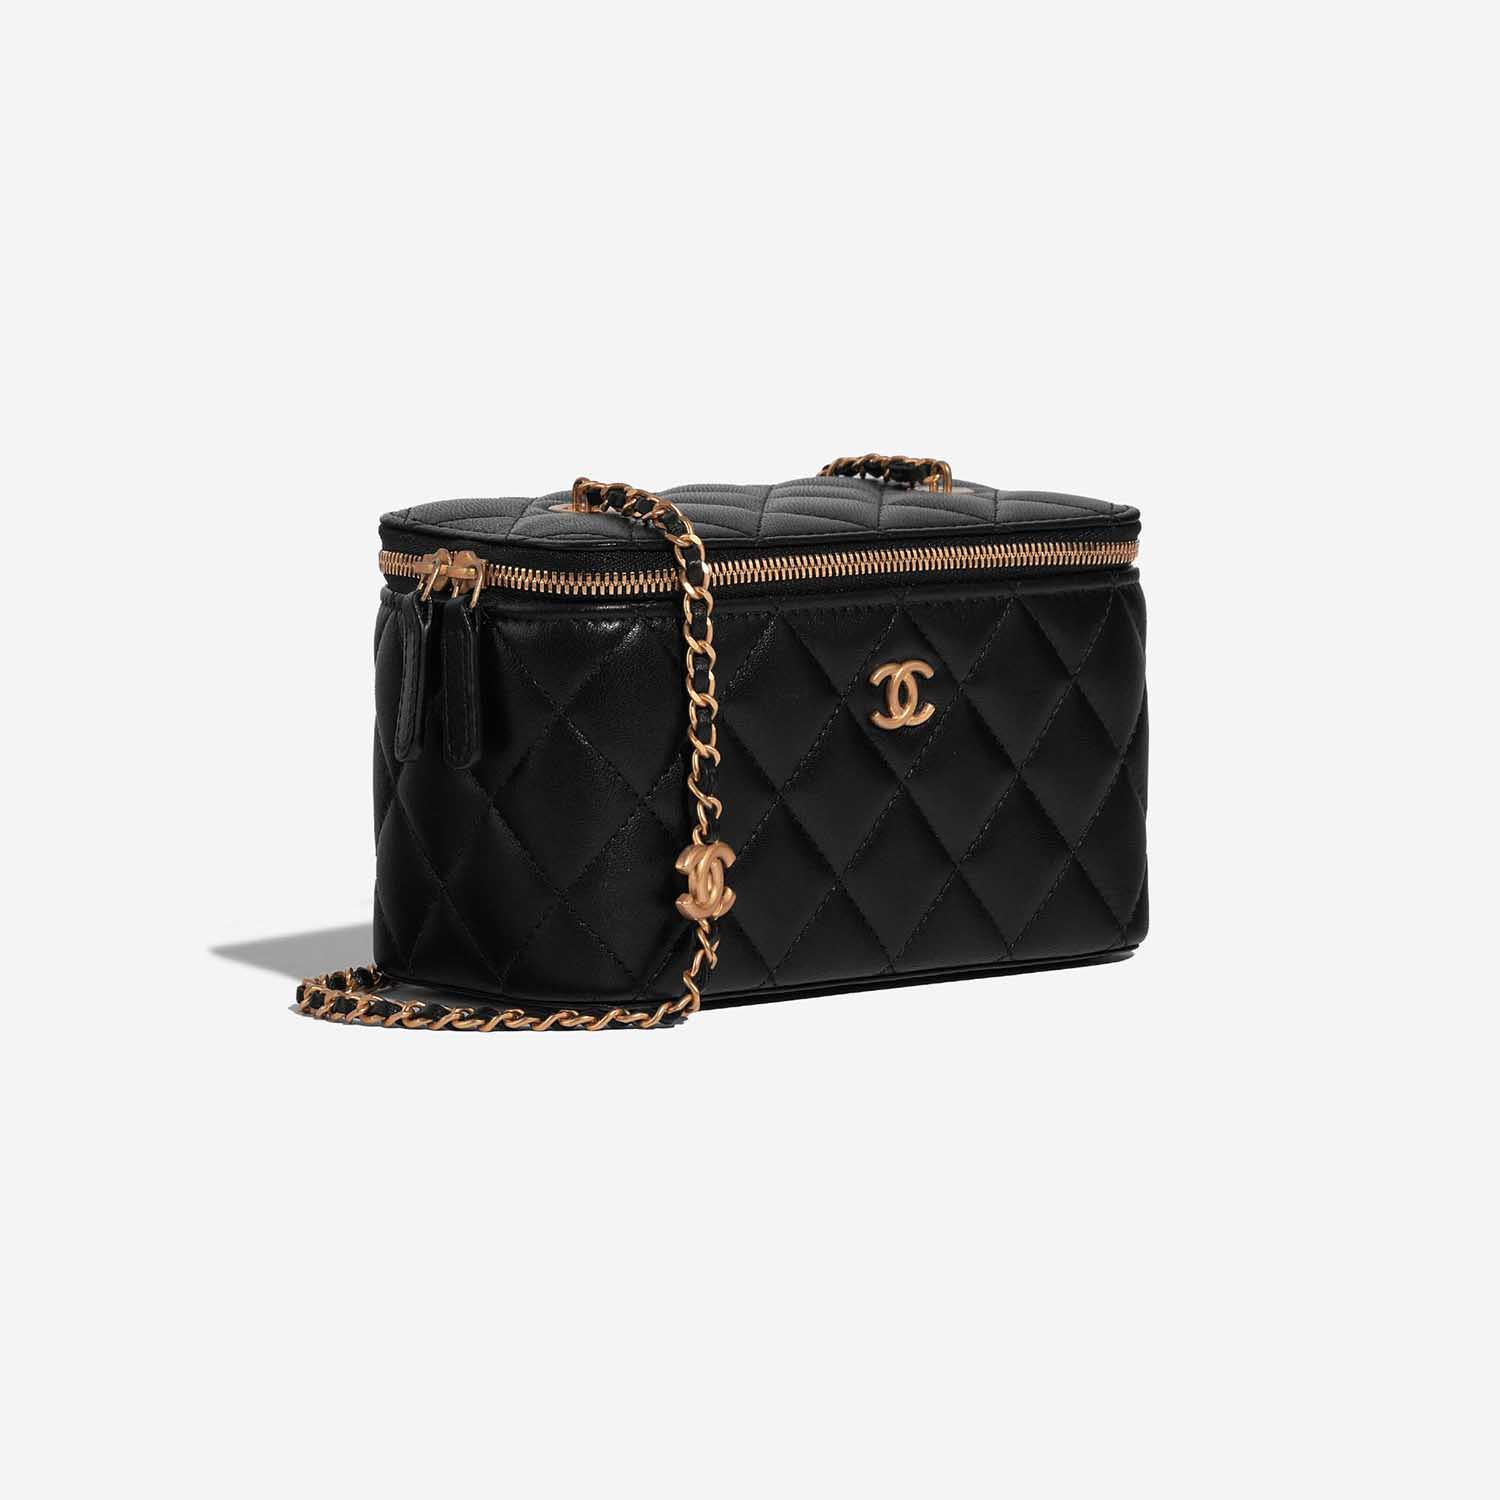 Chanel Vanity Small Black Side Front | Verkaufen Sie Ihre Designer-Tasche auf Saclab.com